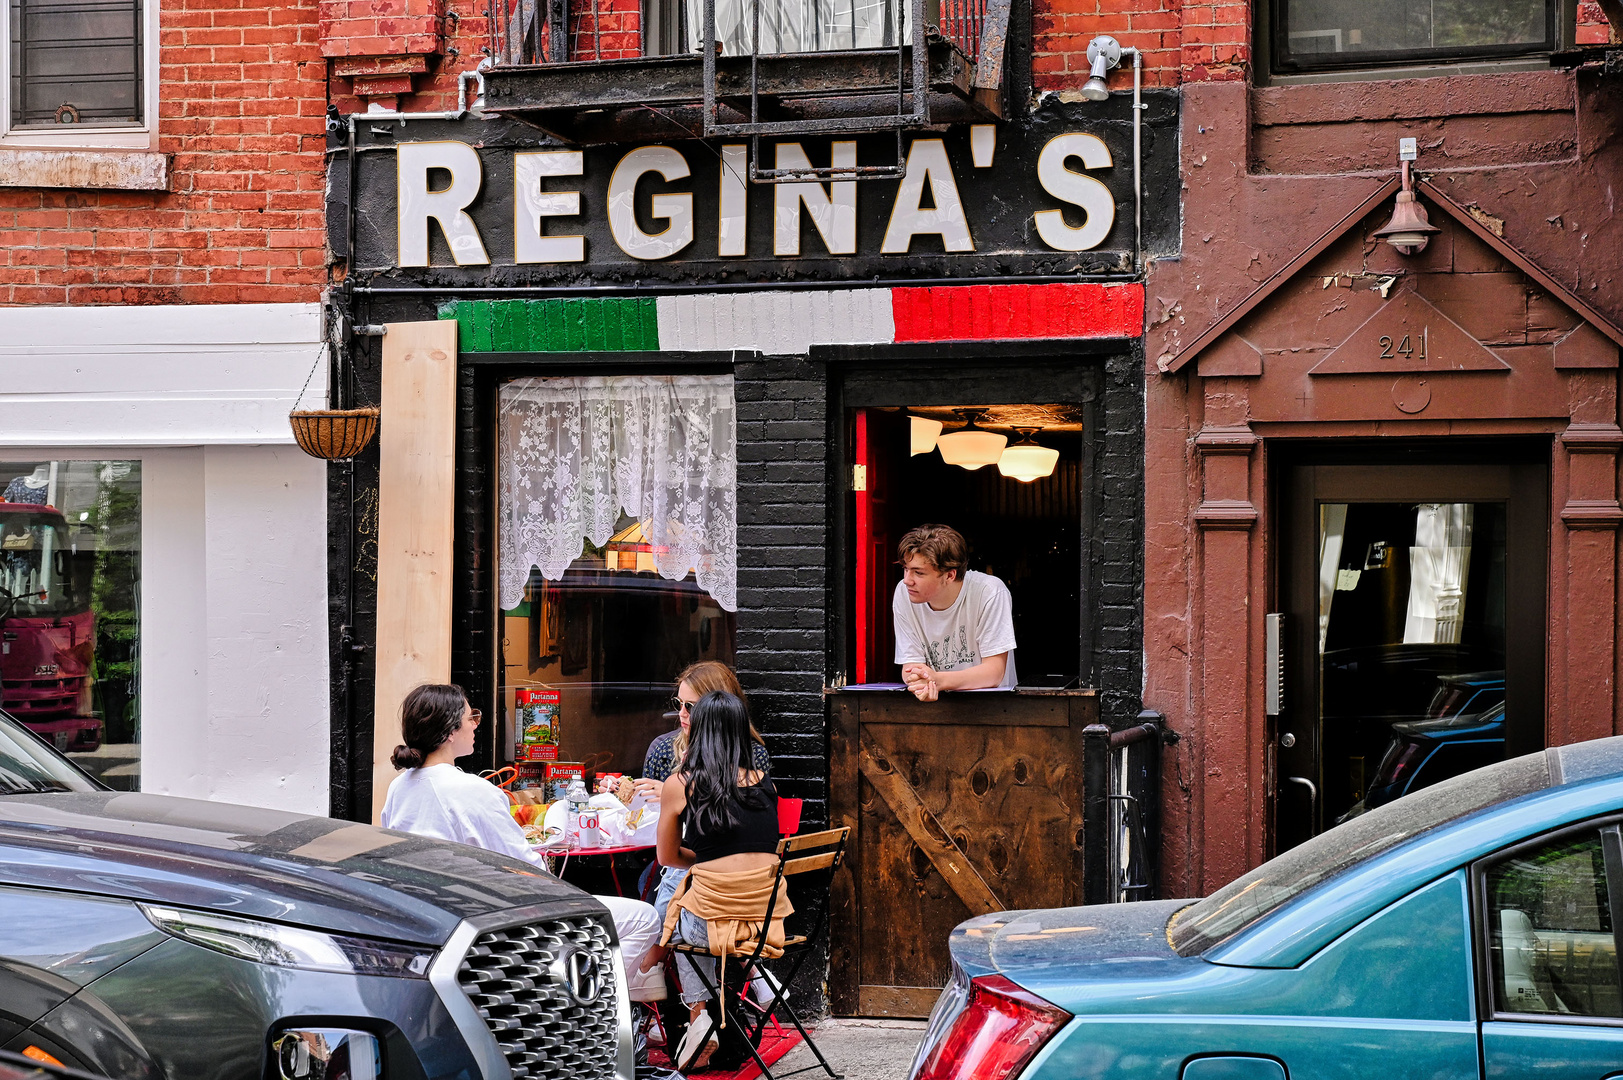 Regina's